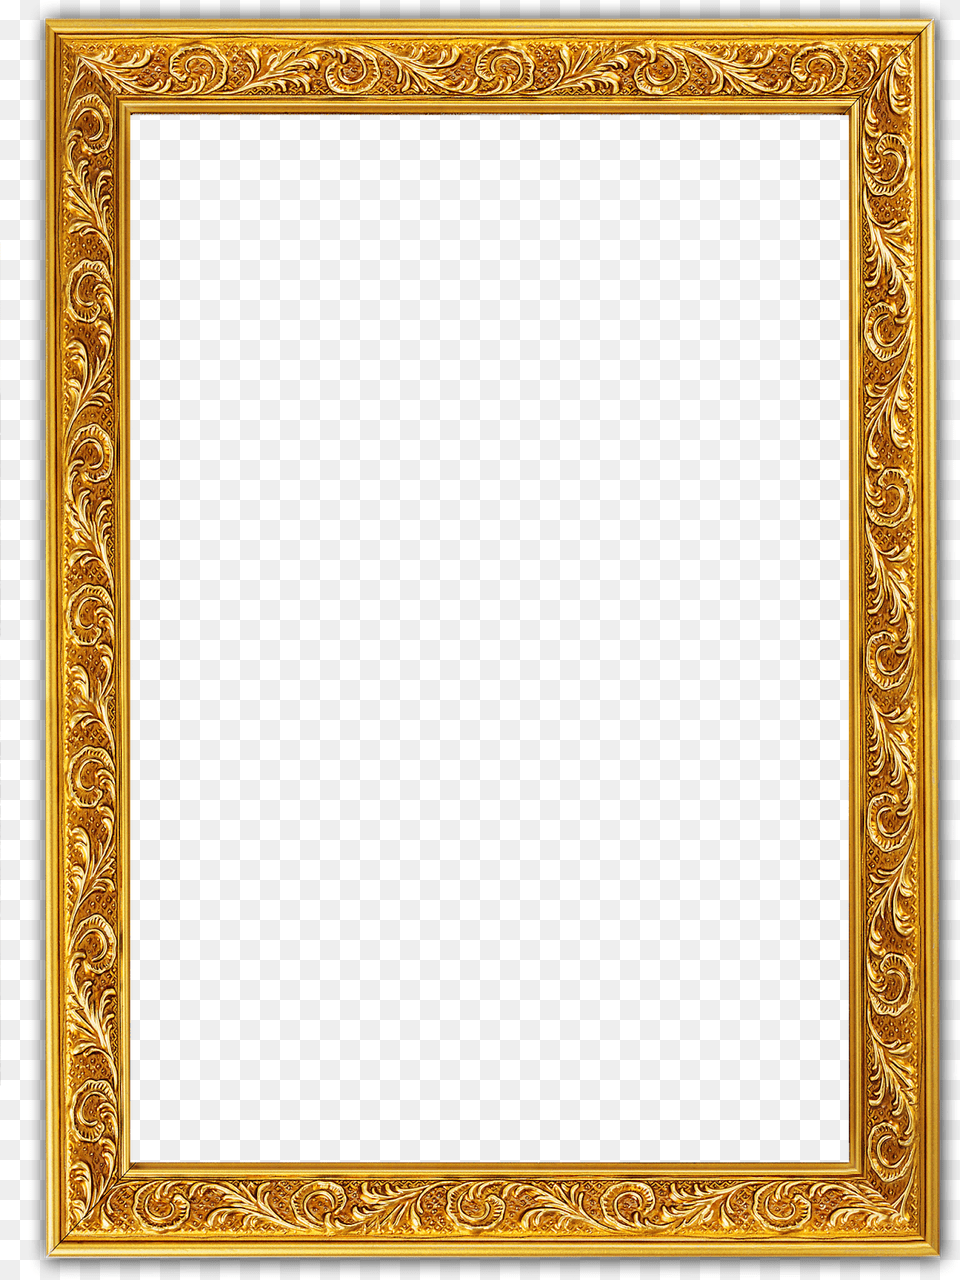 Transparent Frames For Photoshop Golden Frame, Blackboard, Home Decor Png